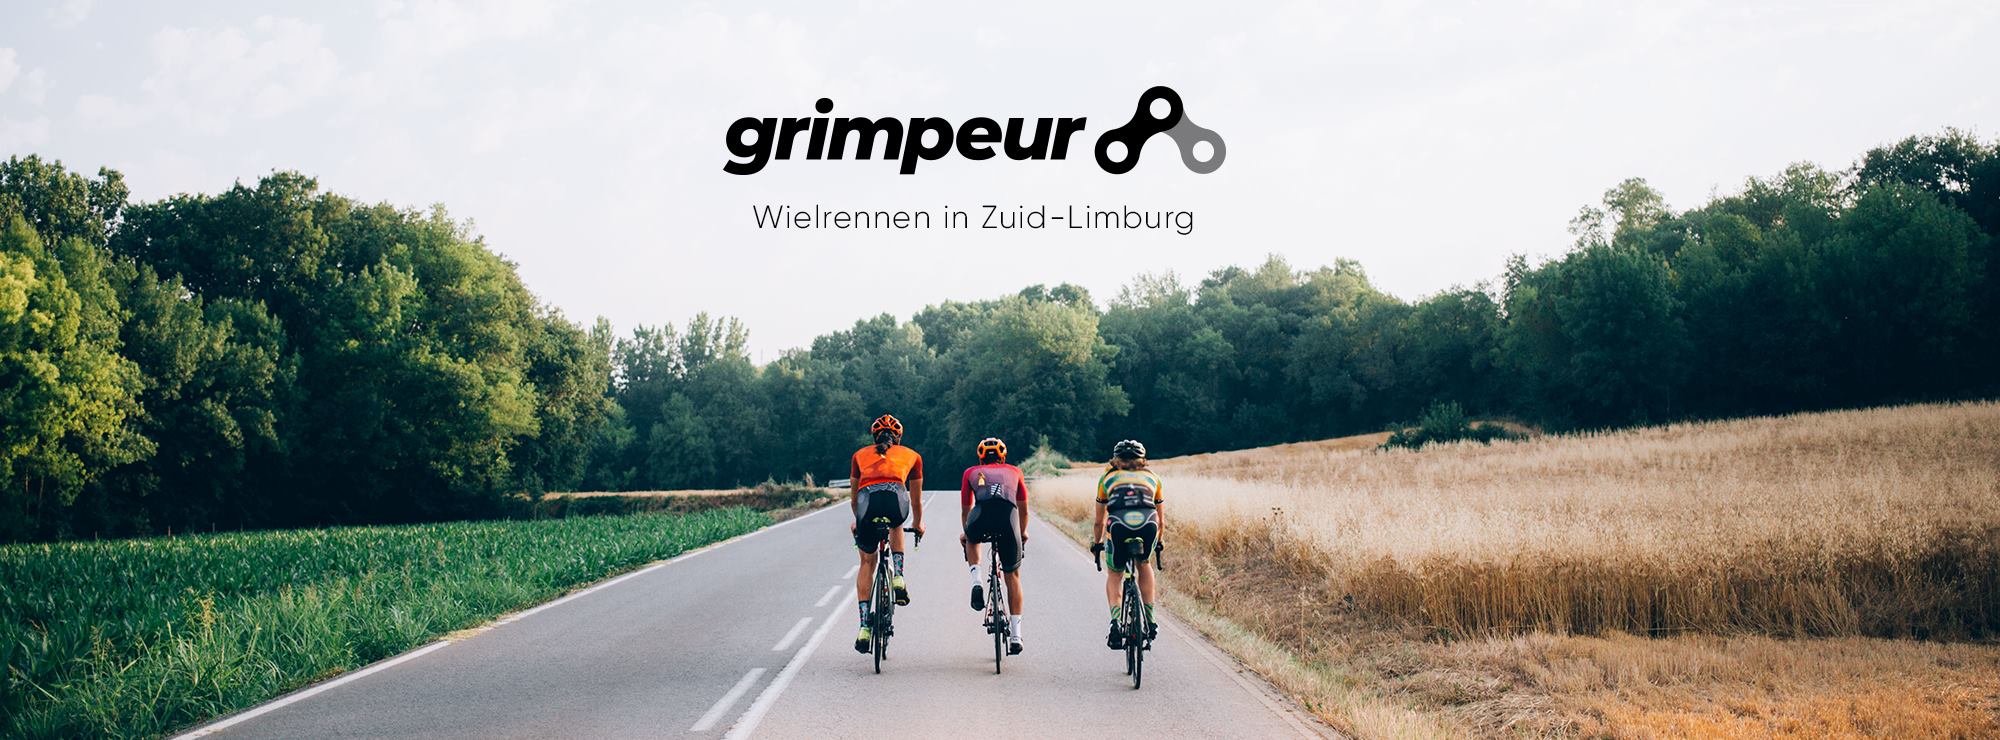 Foto van drie fietsers op de weg met logo Grimpeur